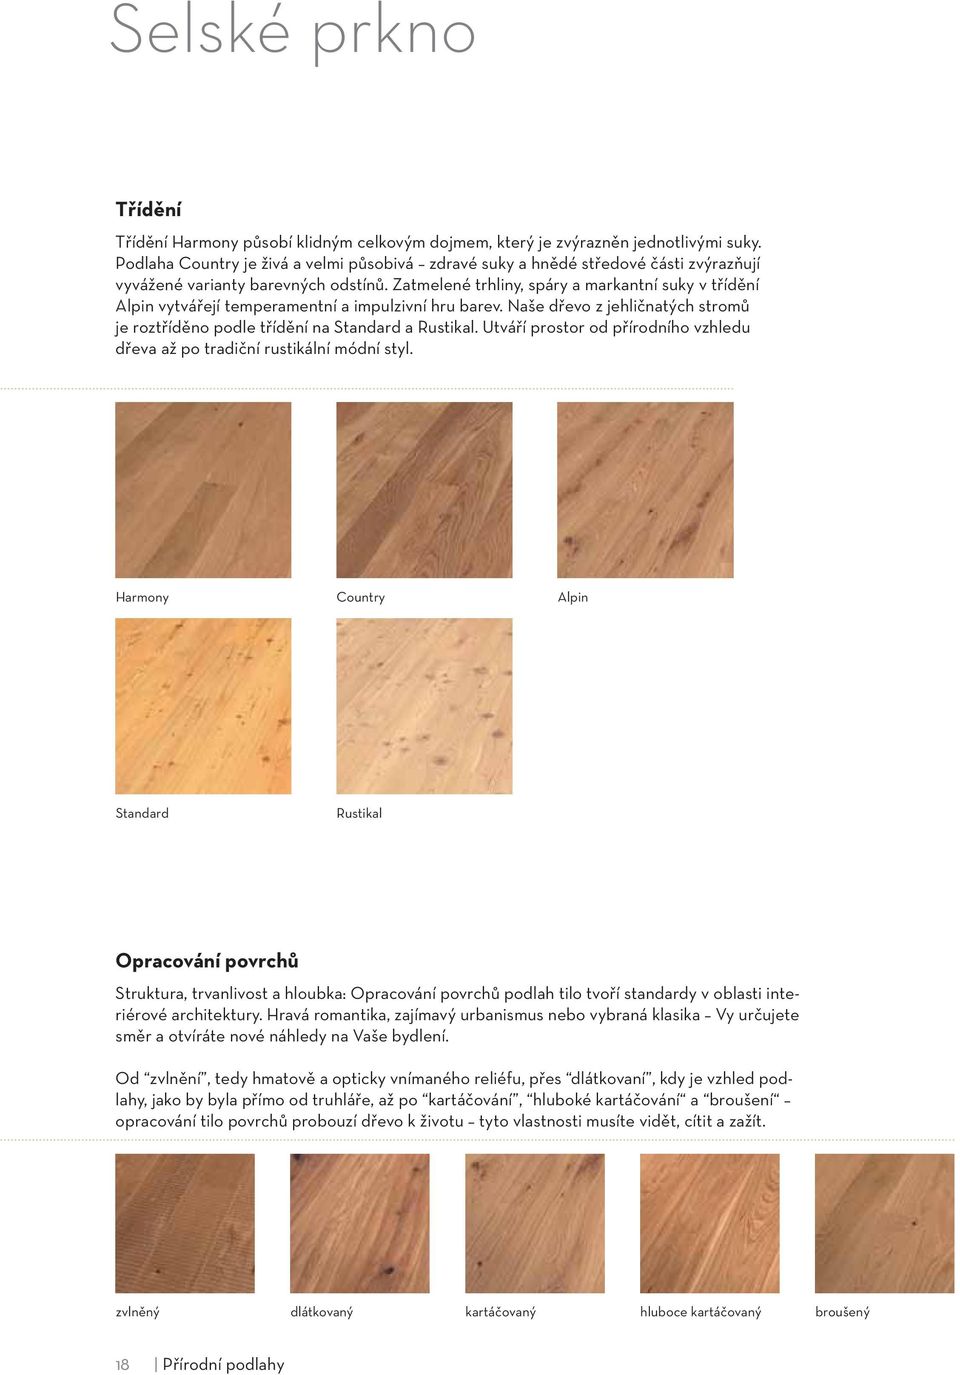 Zatmelené trhliny, spáry a markantní suky v třídění Alpin vytvářejí temperamentní a impulzivní hru barev. Naše dřevo z jehličnatých stromů je roztříděno podle třídění na Standard a Rustikal.